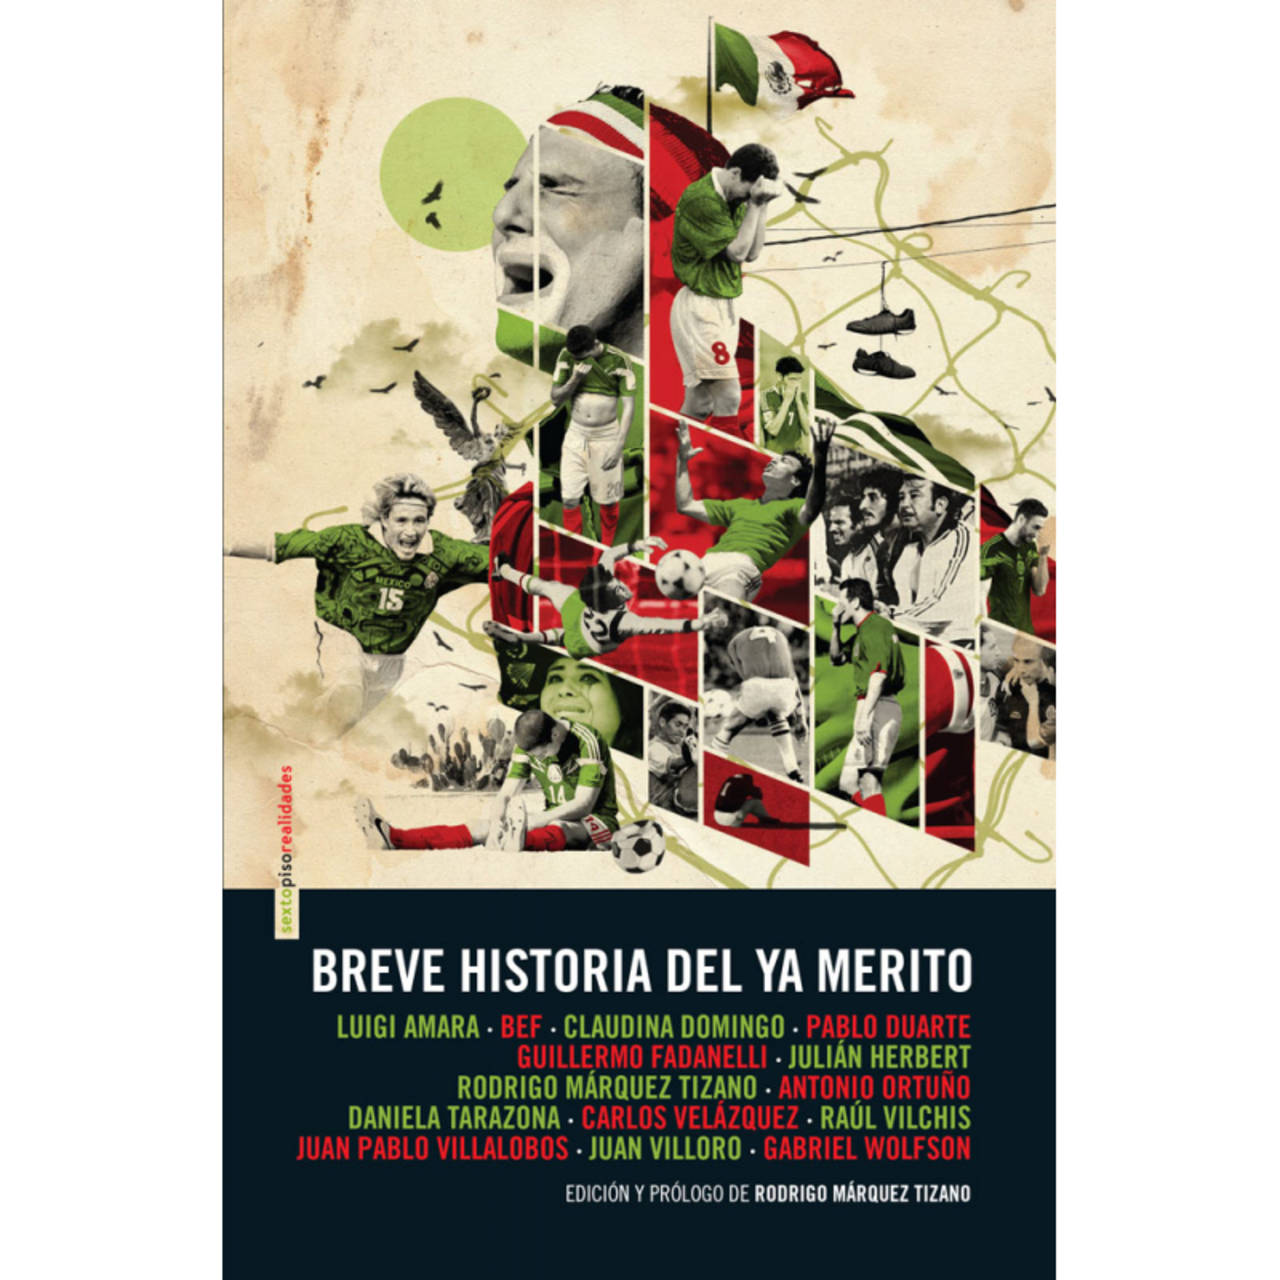 Tema. El libro Breve historia del ya merito, será presentado en el Museo Arocena el próximo 1o de julio.